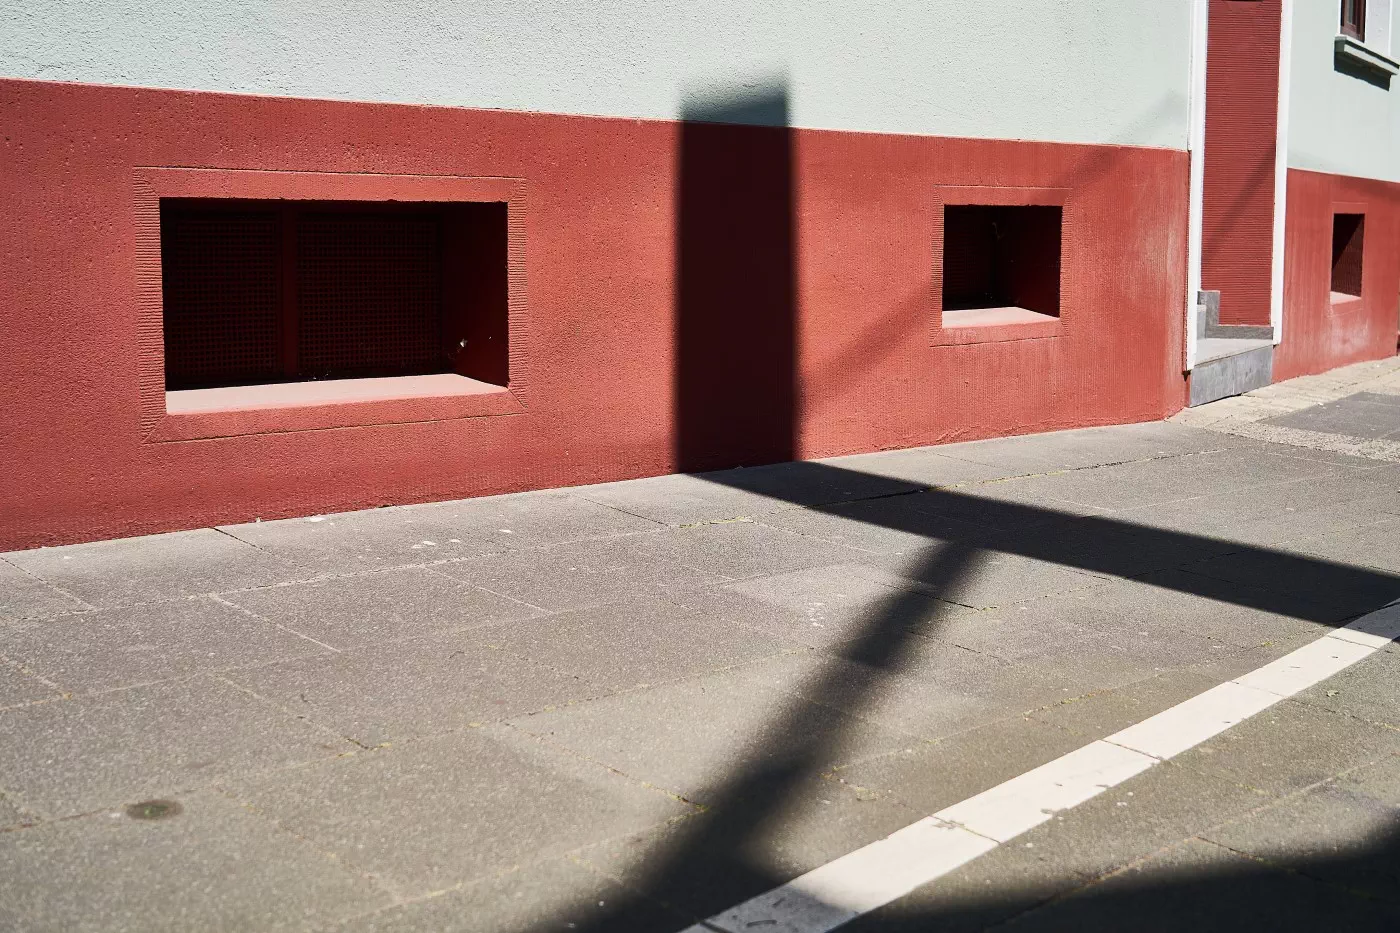 Auf einem von der hellen Sonne beschienenen und mit Betonplatten gepflasterten Bürgersteig sind vor einer rot gestrichenen Hauswand schwarze Schattenlinien zu sehen, die sich auf der Hauswand fortsetzen.